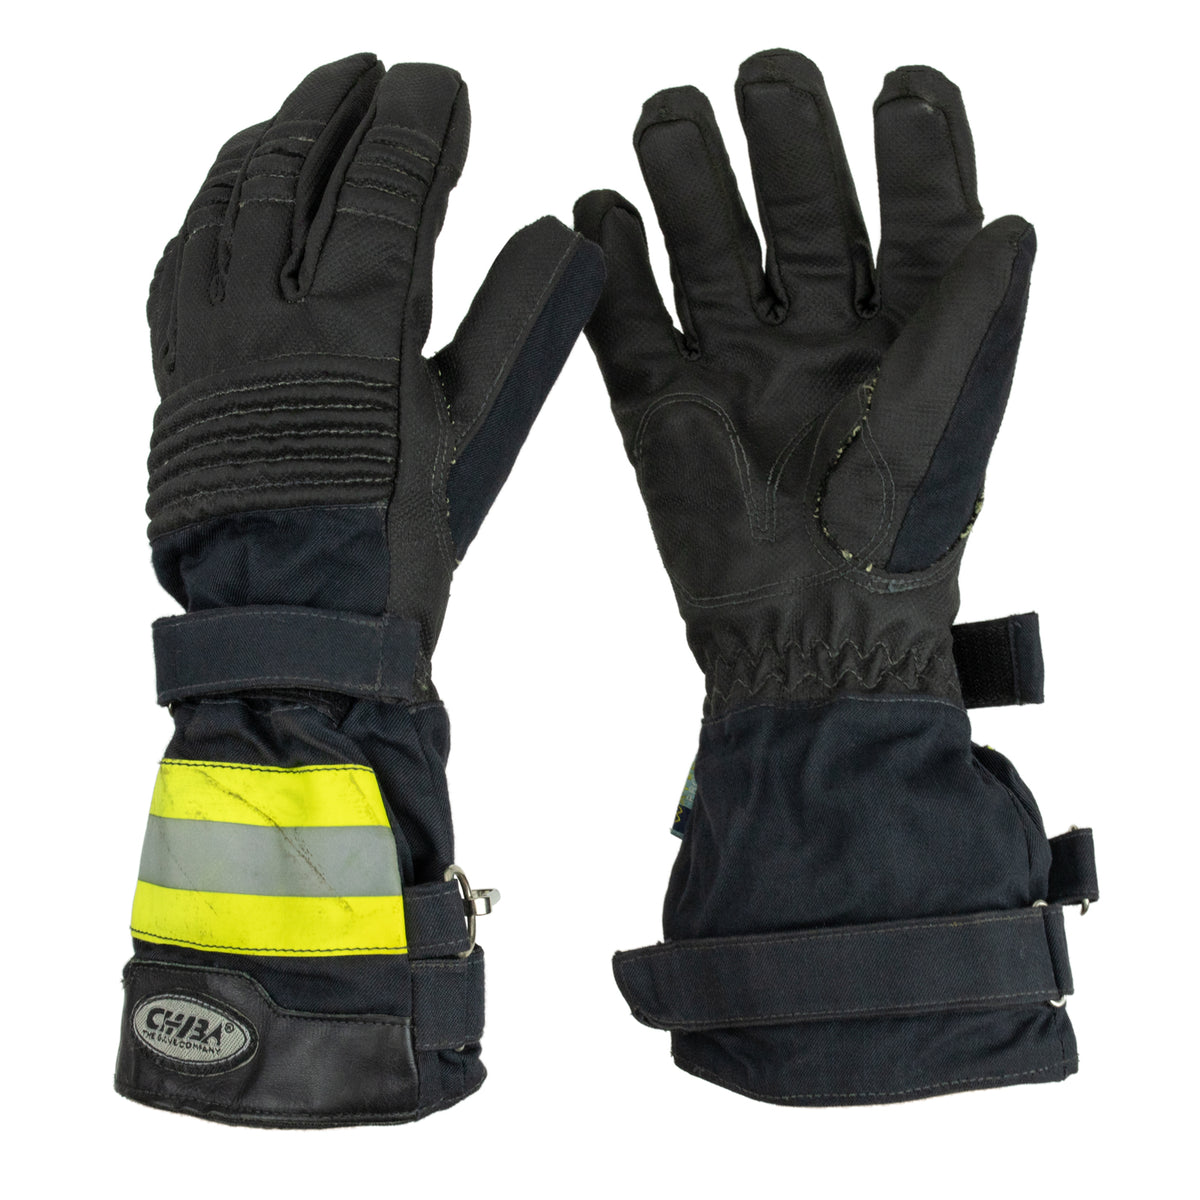 German Waterproof Hi-Vis Reflective Work Gloves